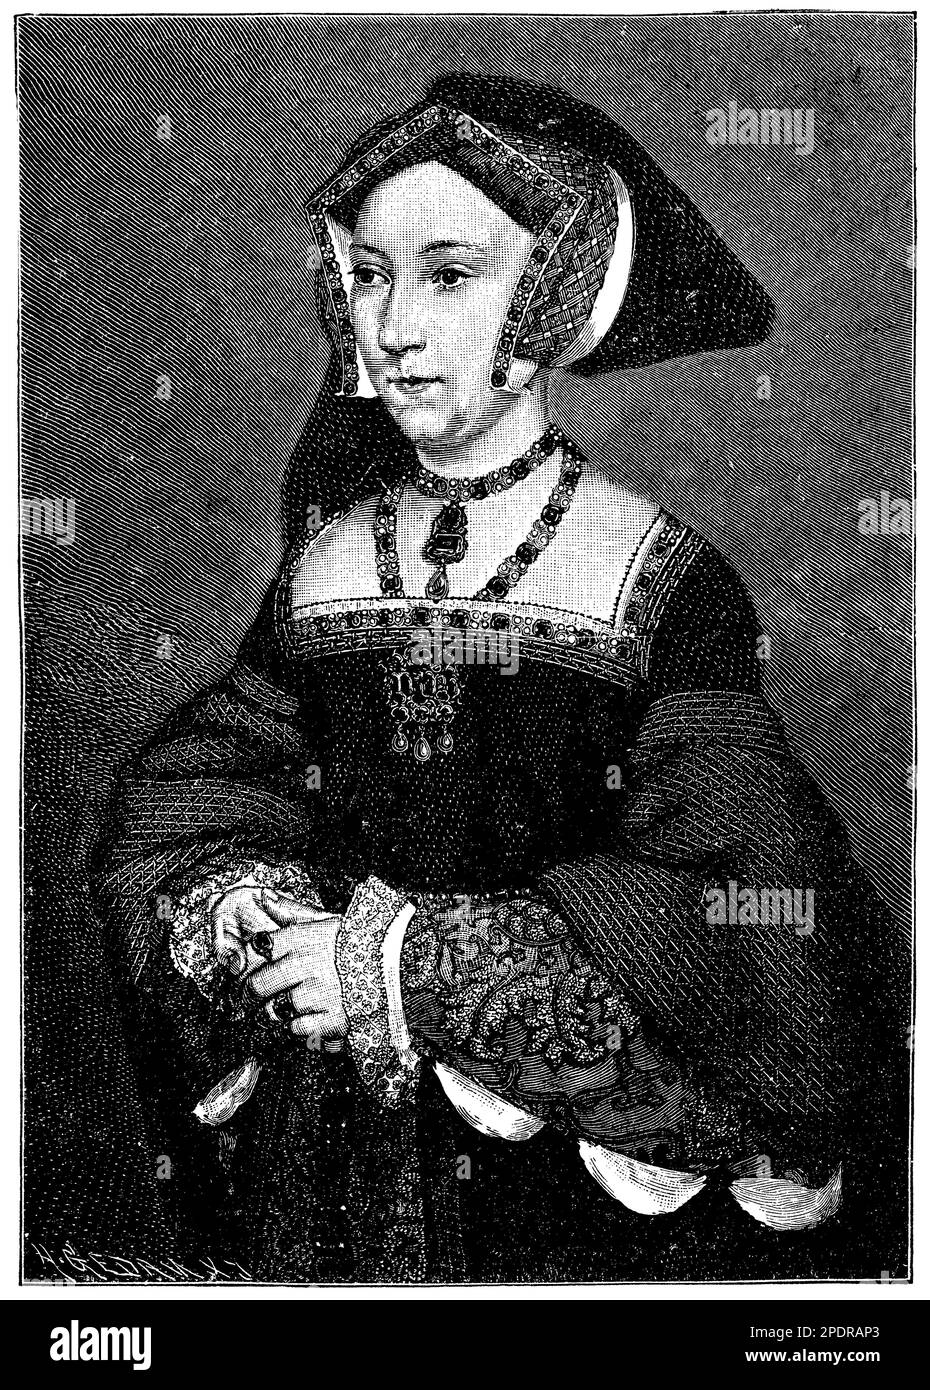 Joan Seymour (ca. 1508-1537) war die dritte Ehefrau von König Heinrich VIII von England und die Mutter von König Edward VI Joan war bekannt für ihr ruhiges und sanftes Auftreten und war nach der turbulenten Beziehung mit seiner früheren Frau Anne Boleyn ein Favorit von Henrys. Joan gebar einen Sohn und sicherte sich ihre Position als Königin, aber sie starb kurz darauf an Komplikationen im Zusammenhang mit der Geburt. Trotz ihrer kurzen Herrschaft und des Mangels an historischer Dokumentation bleibt Joan eine bemerkenswerte Figur in der Geschichte von Tudor. Stockfoto